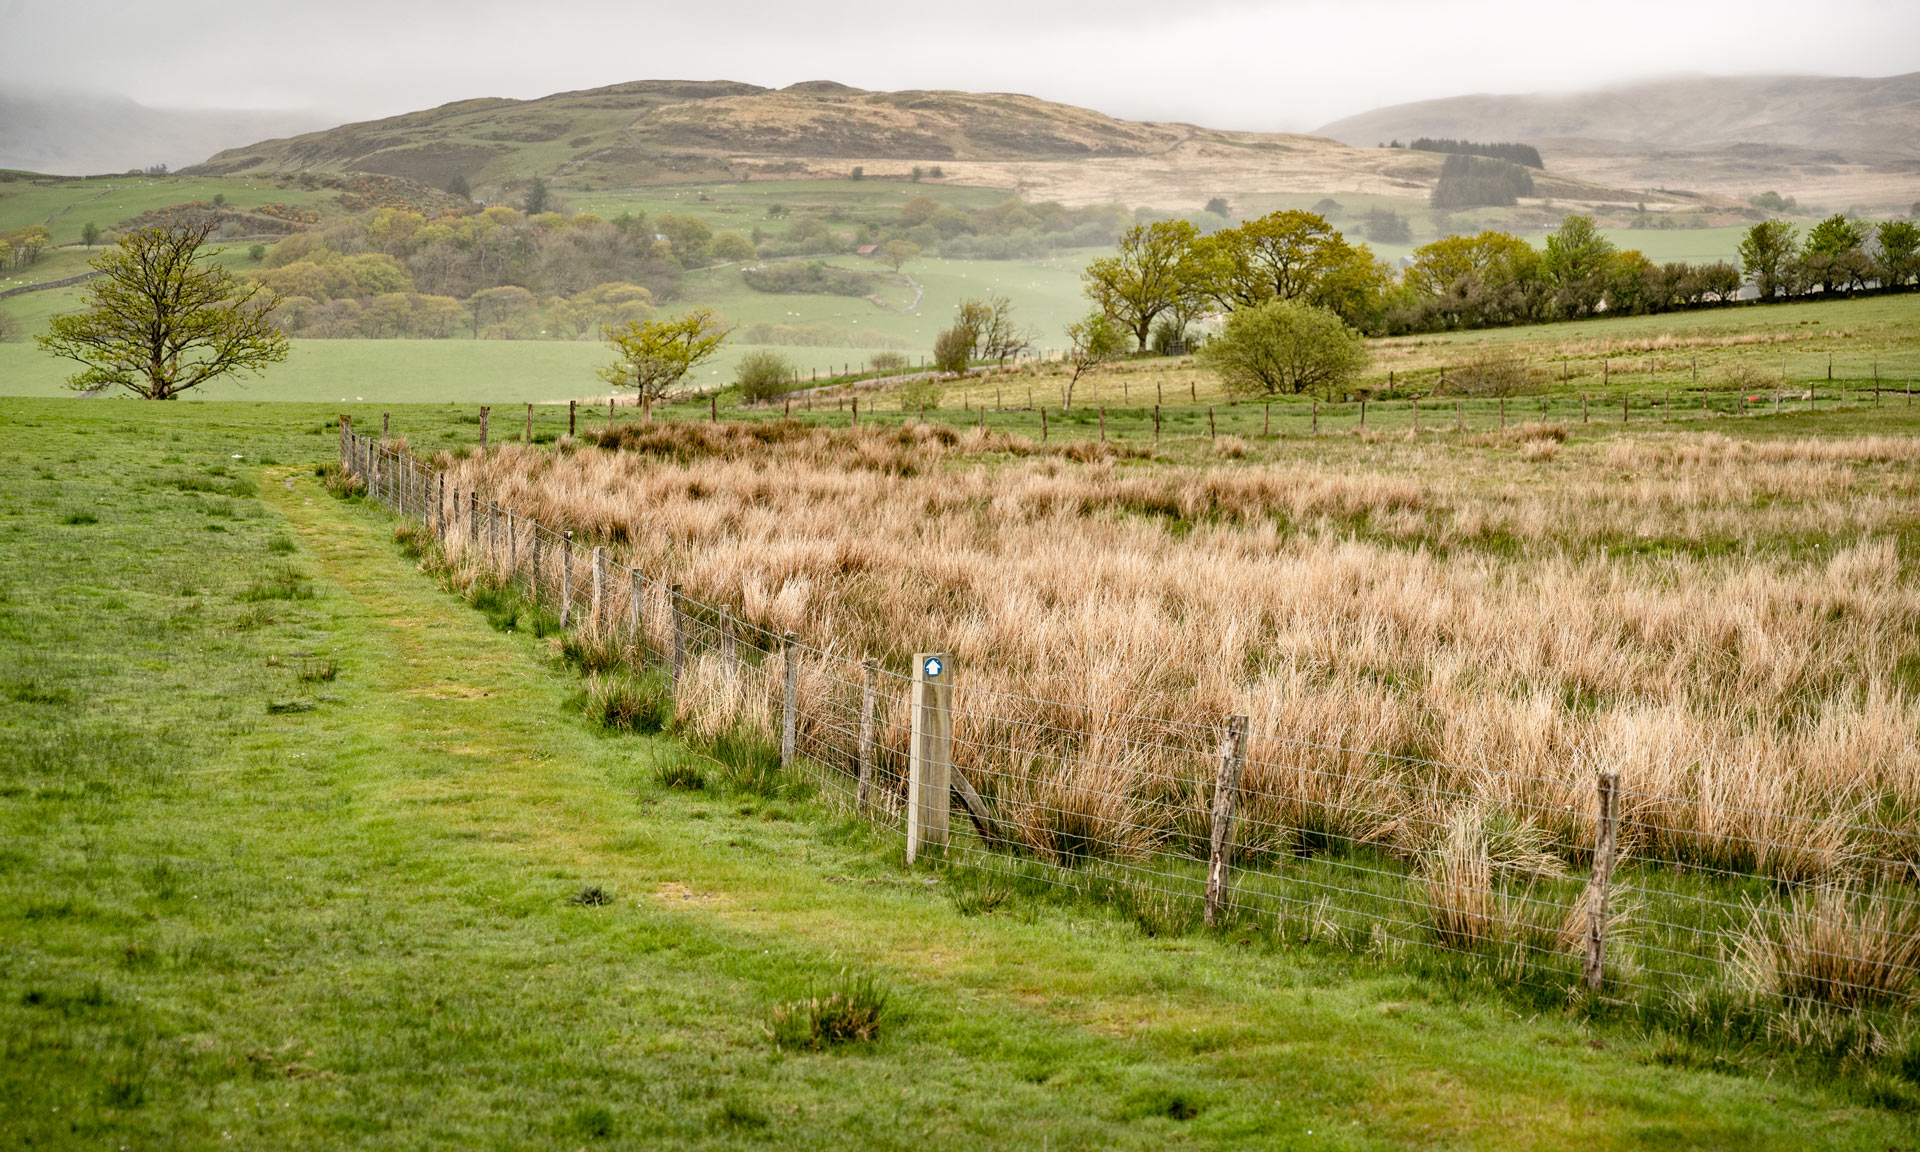 One of Yr Ysgwrn's walking paths leads along a fence in farmland